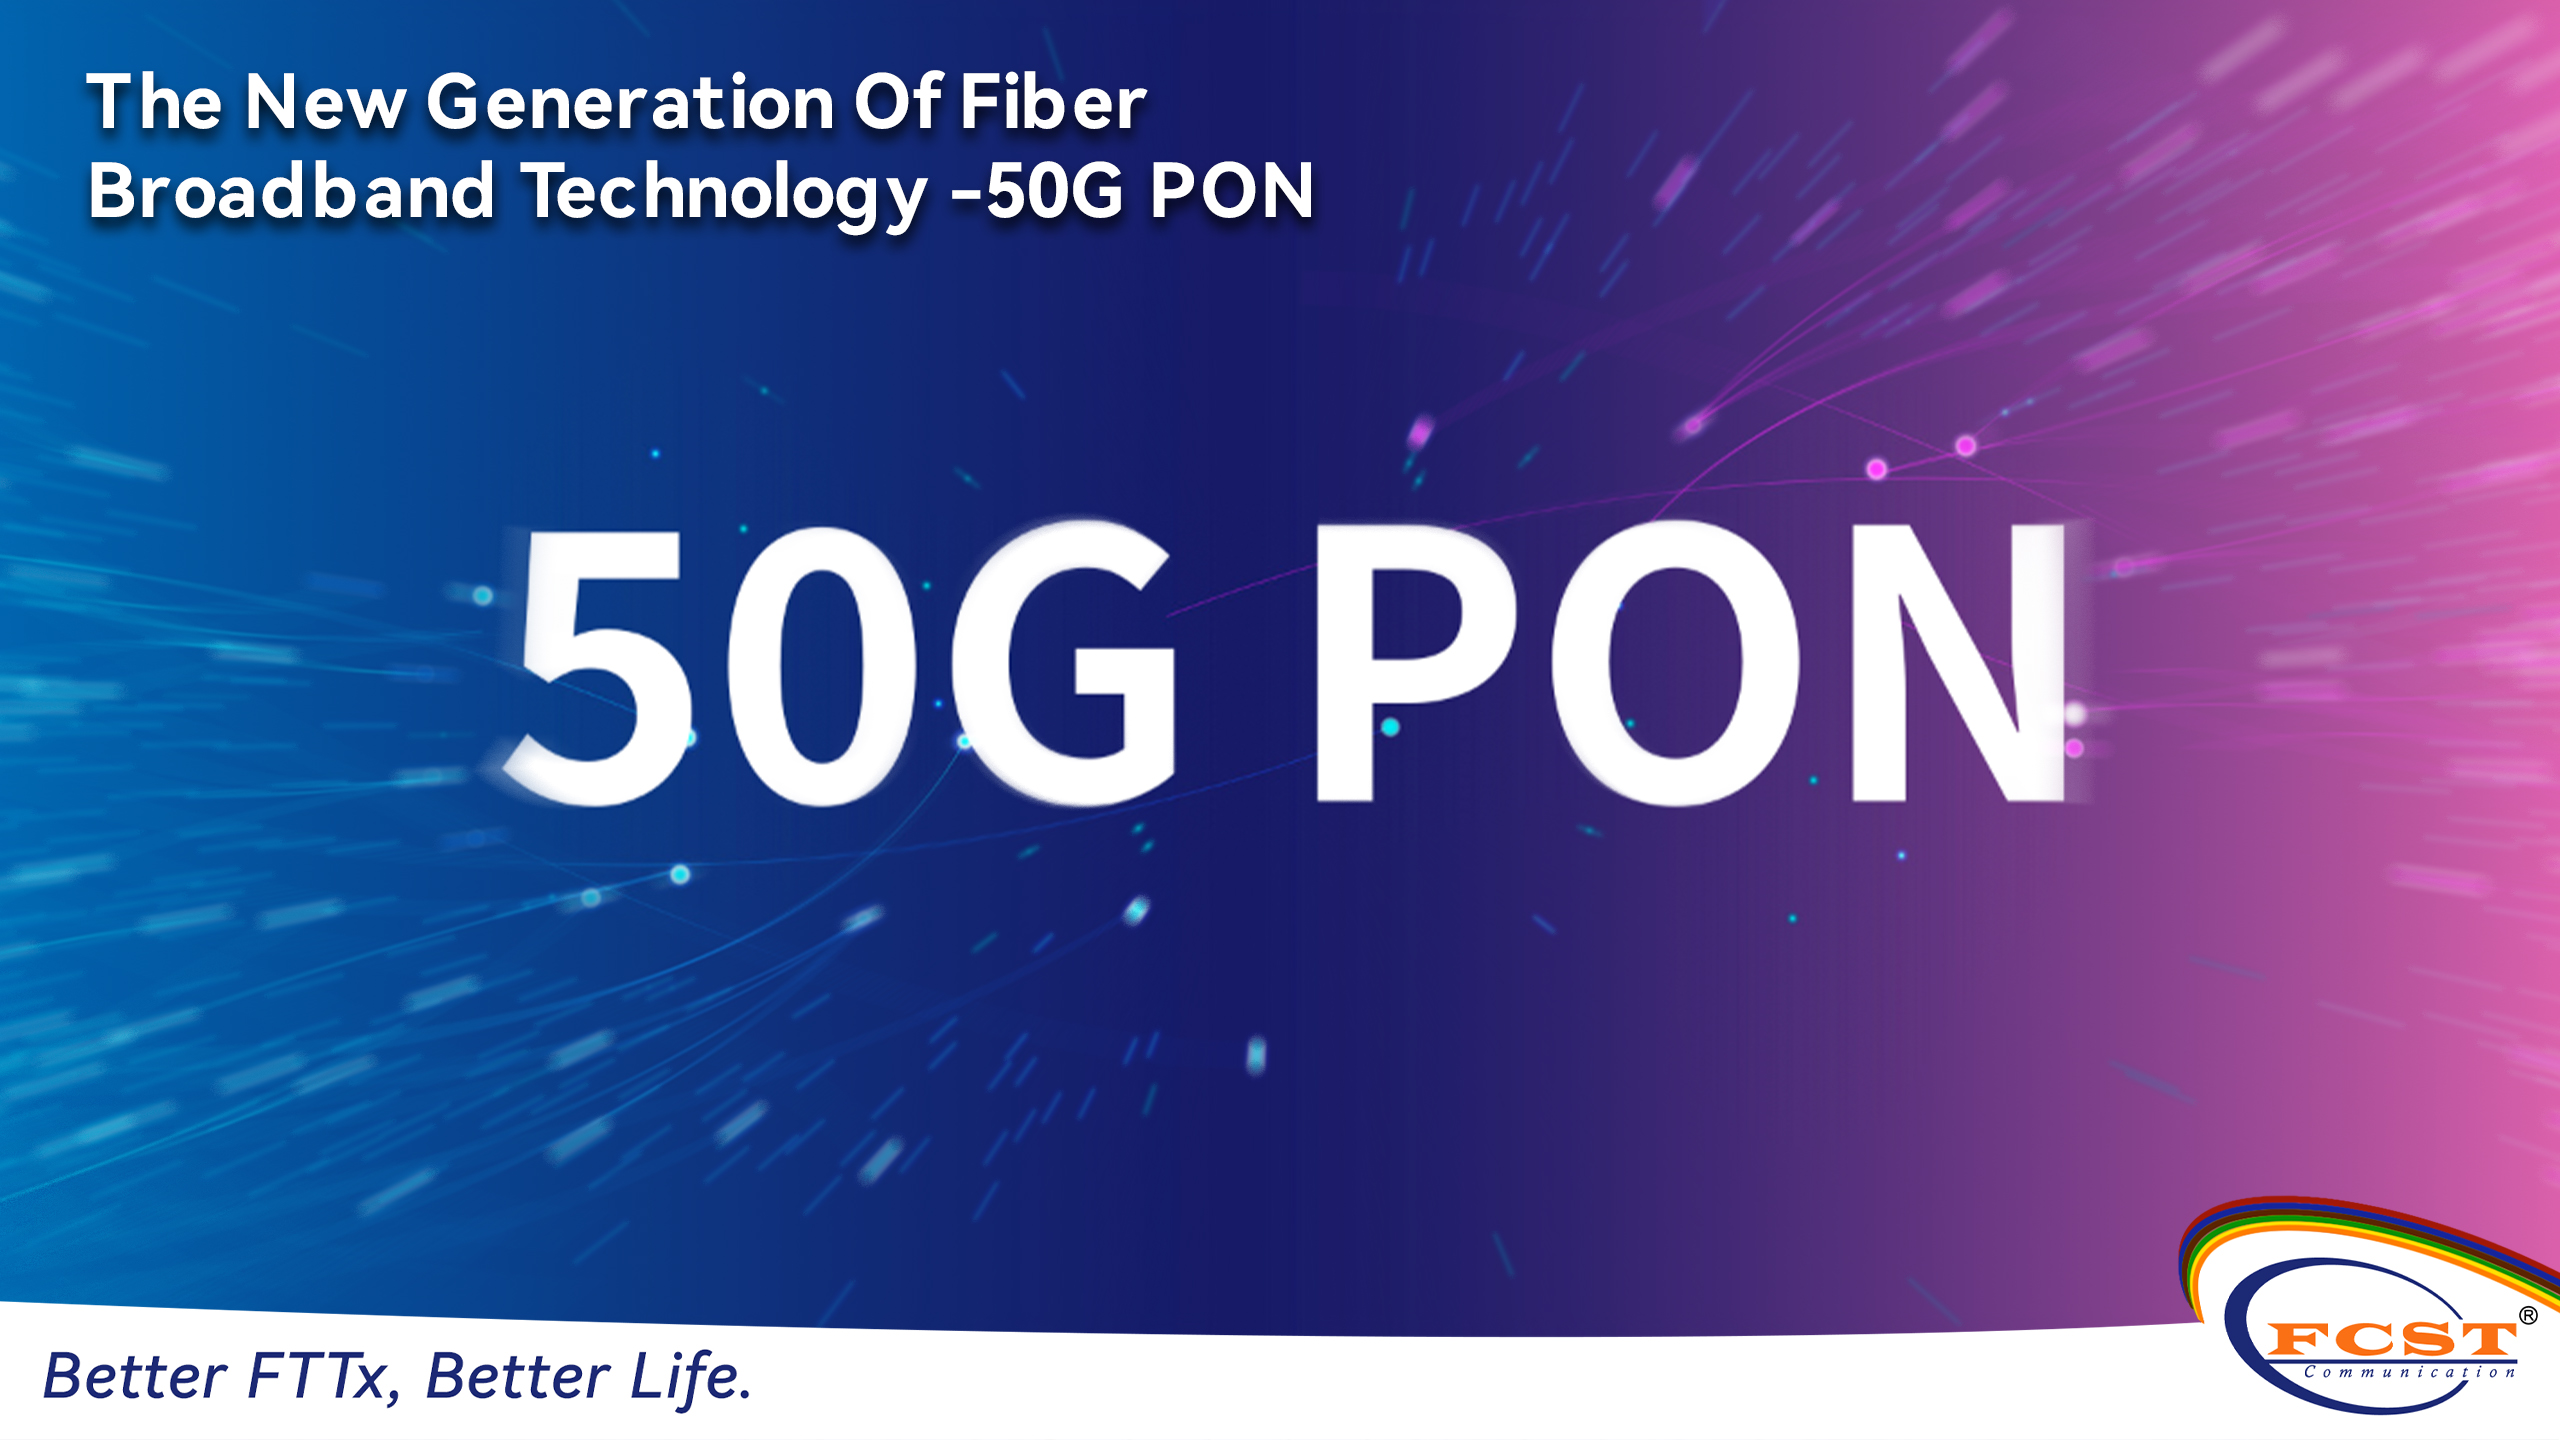 A nova geração de tecnologia de banda larga de fibra - 50G PON